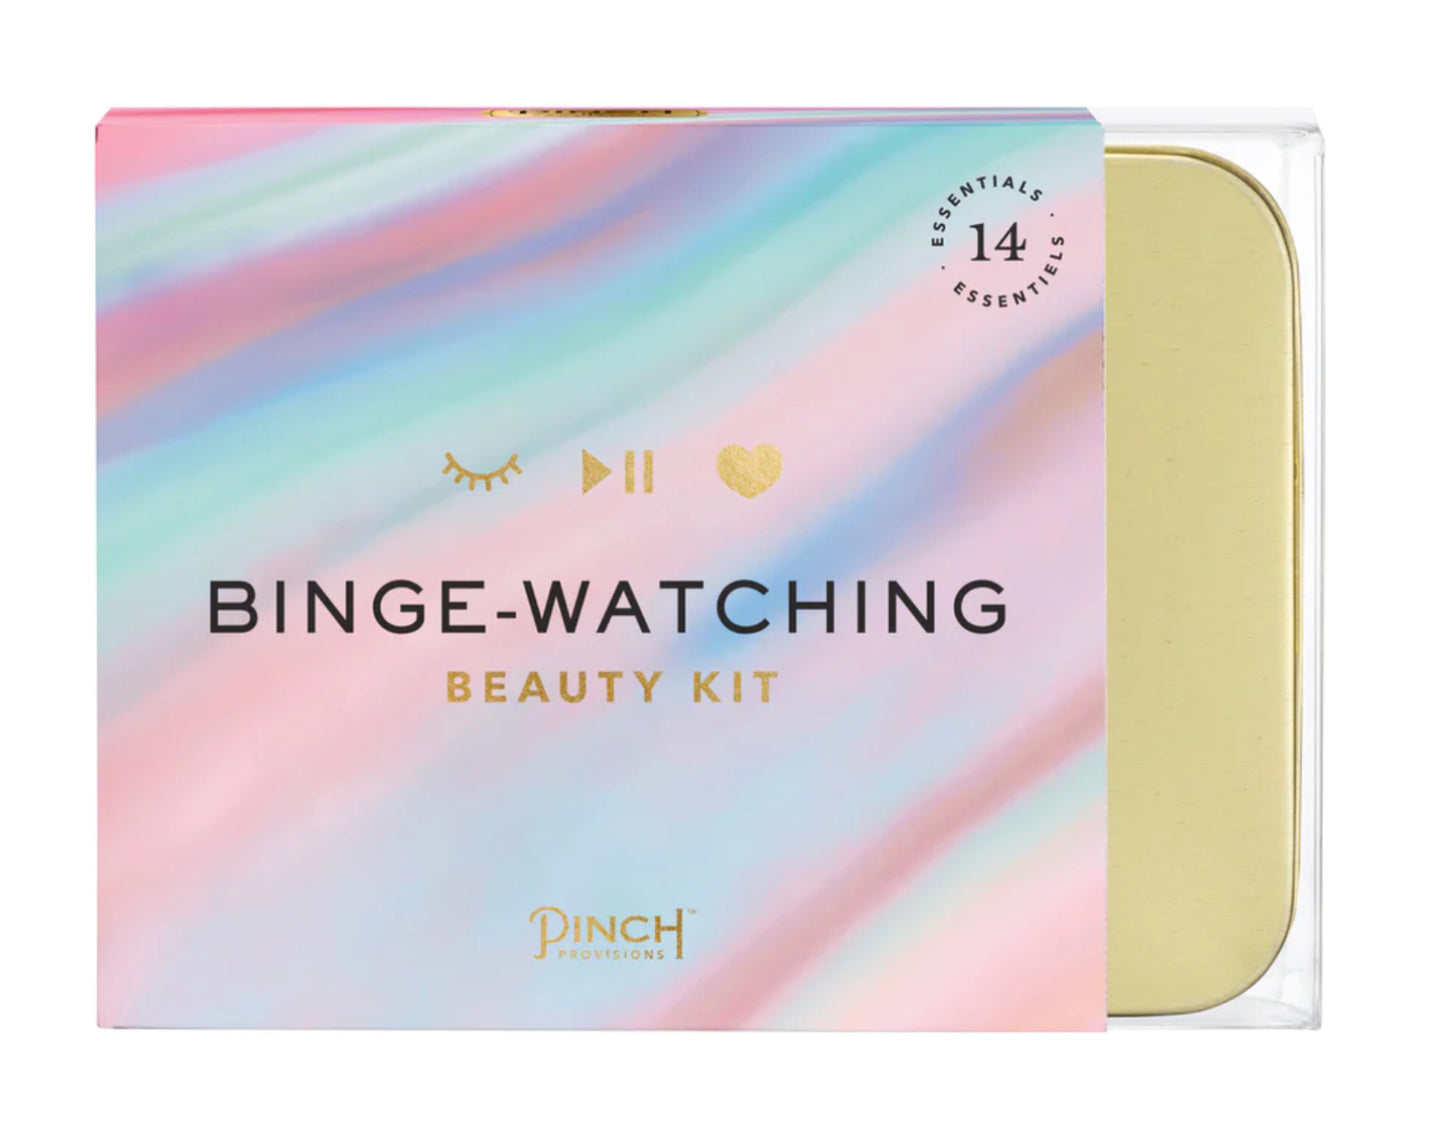 Binge Watching Beauty Kit- Gold -Pinch provisions